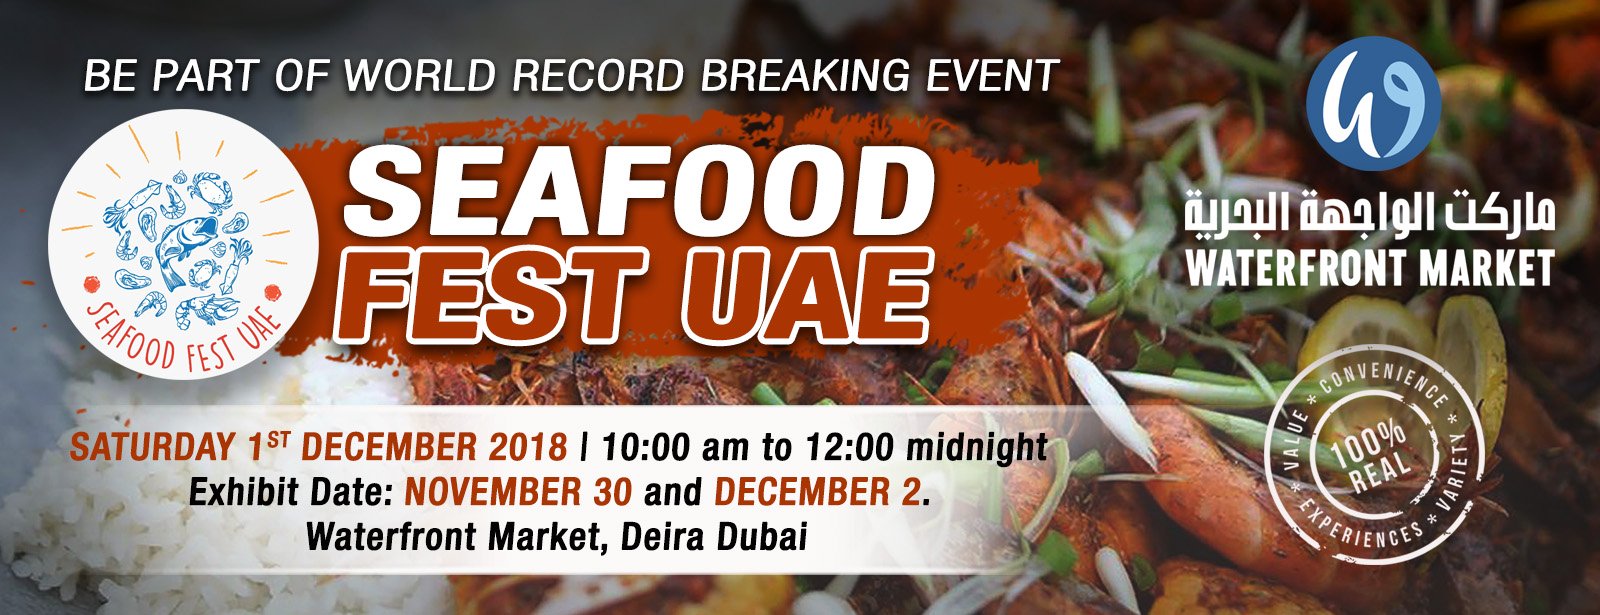 Seafood Fest UAE 2018 - Coming Soon in UAE